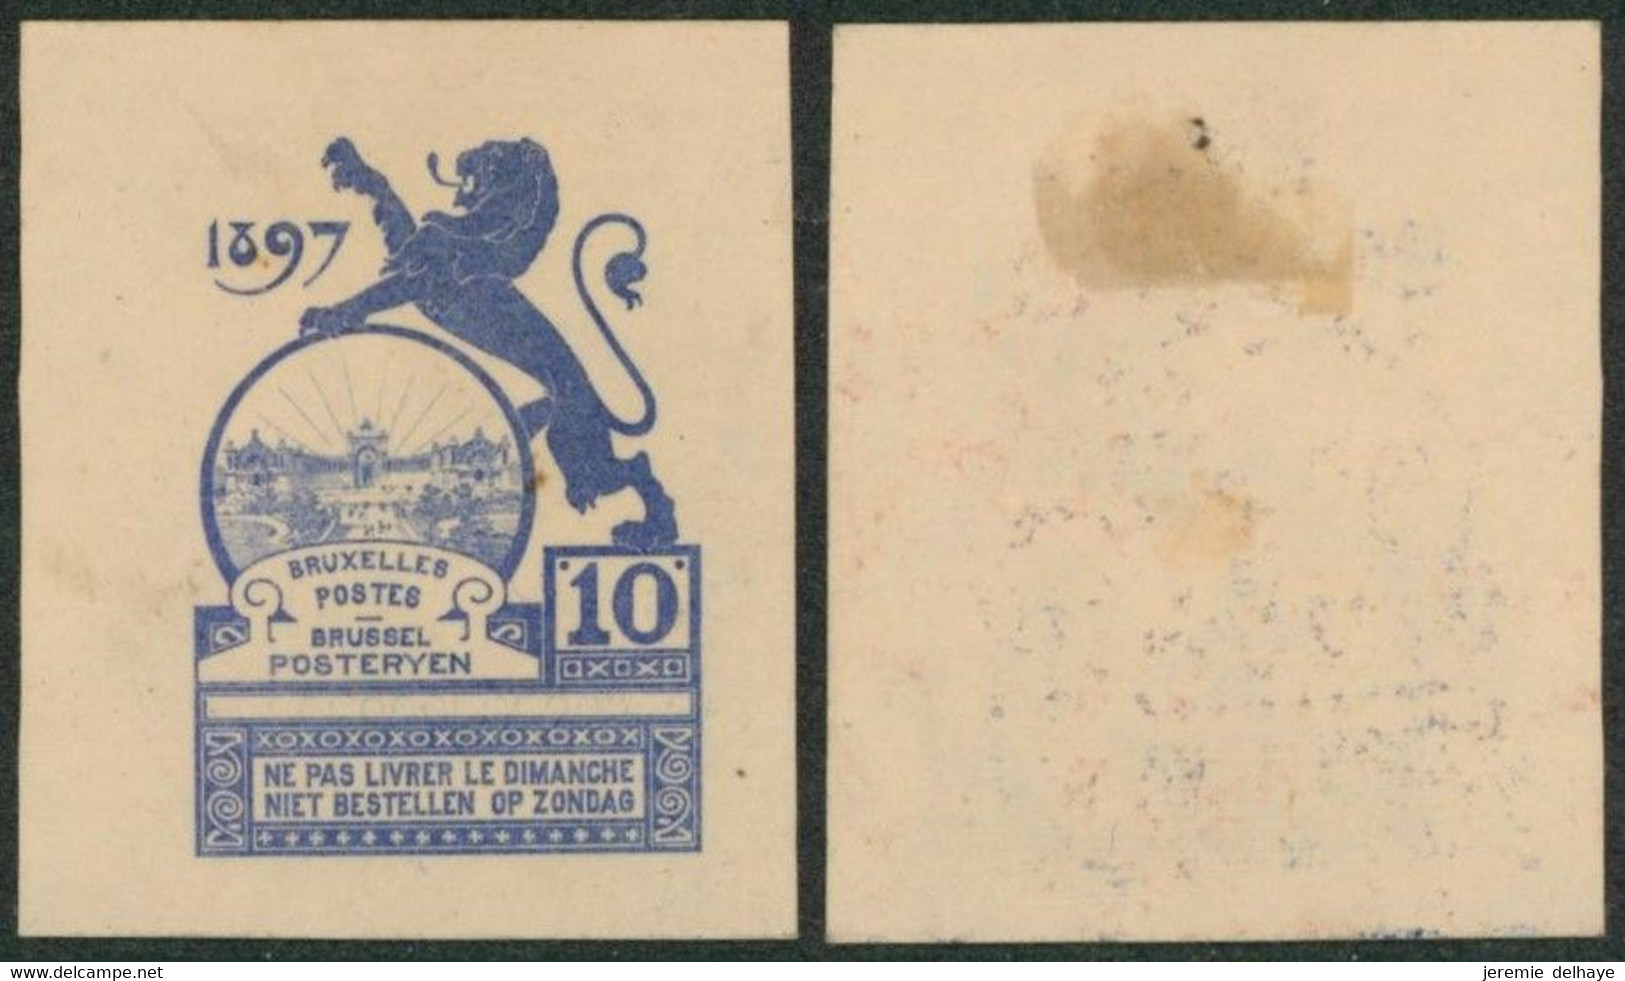 Essai - Proposition Du Peintre Louis Titz (Bruxelles Expositions 1897) Sur Papier Japon épais (1 Couleur) : STES 2223 - Proeven & Herdruk